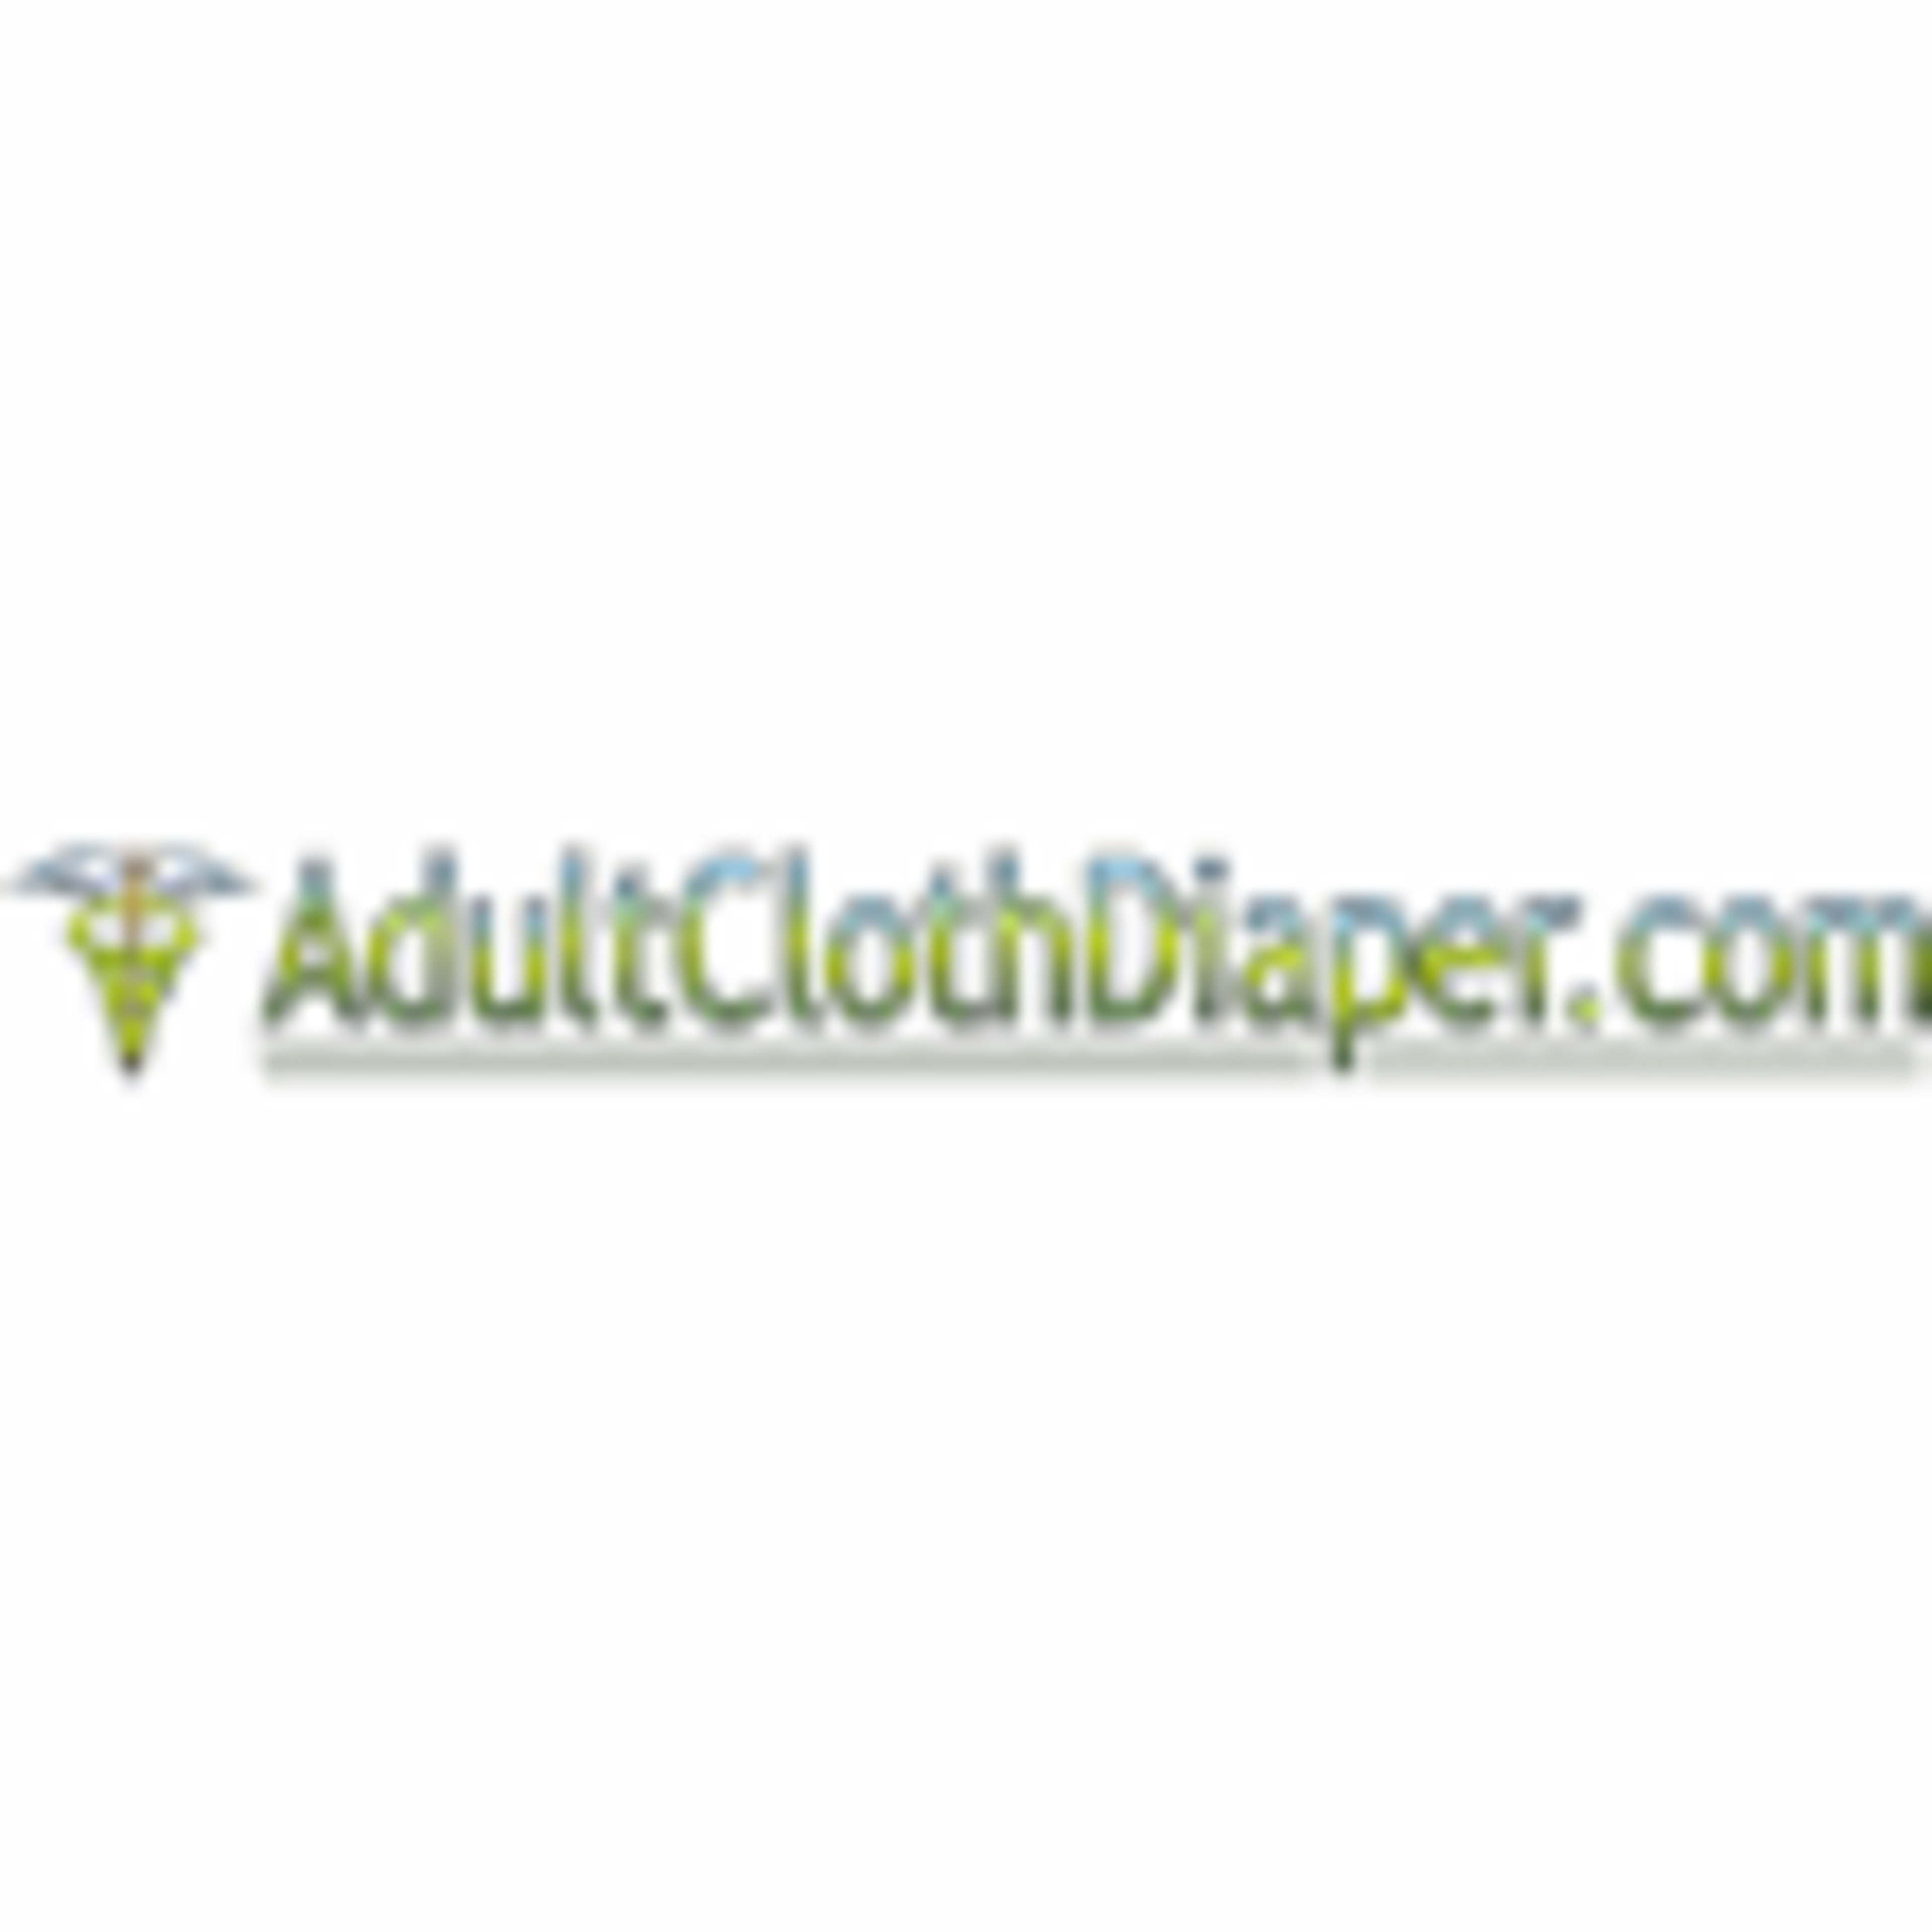 AdultClothDiaper.com Code